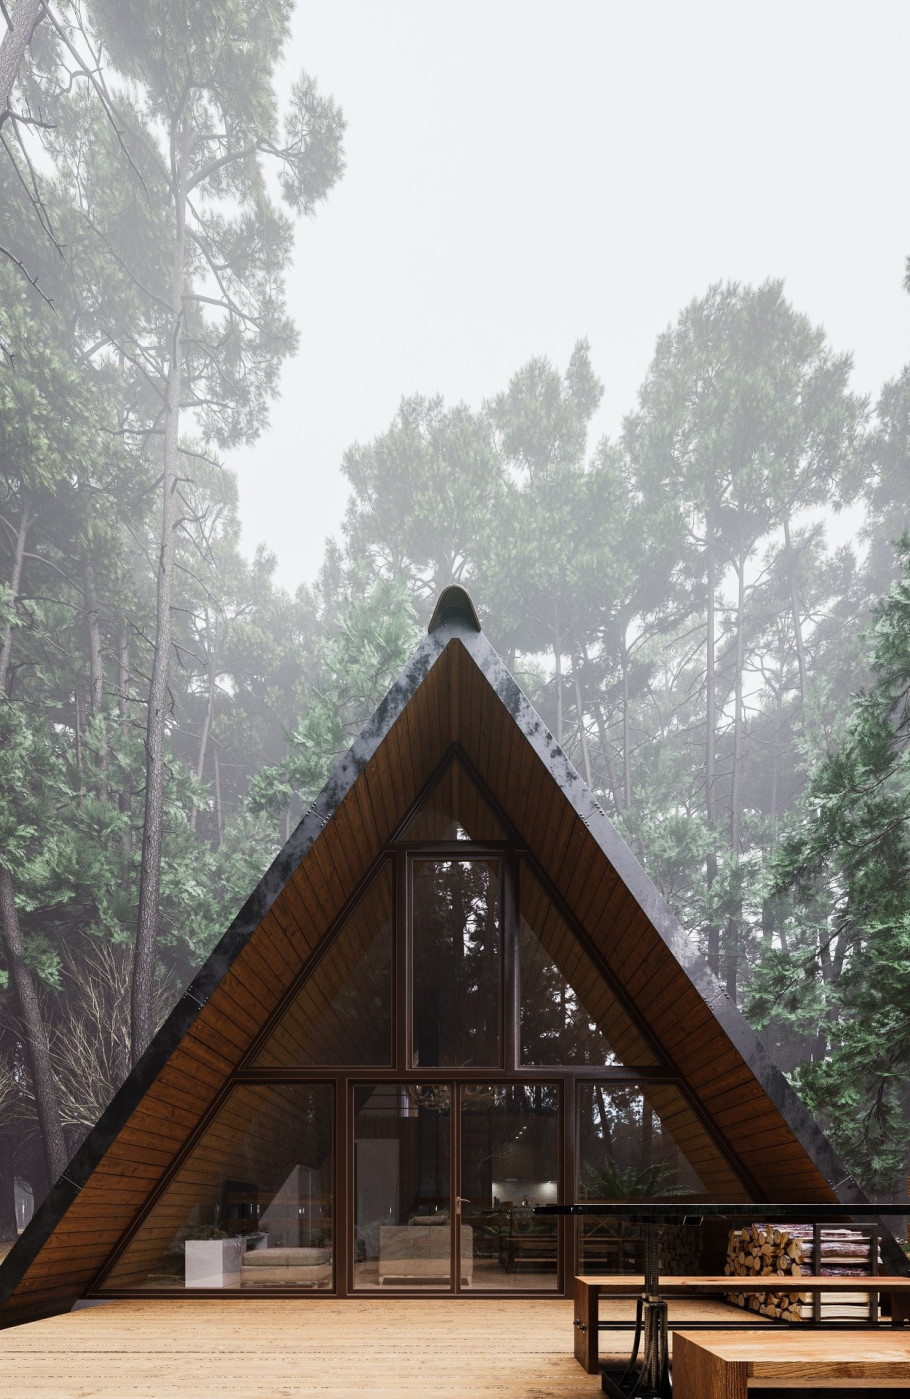 Cabin Lodge